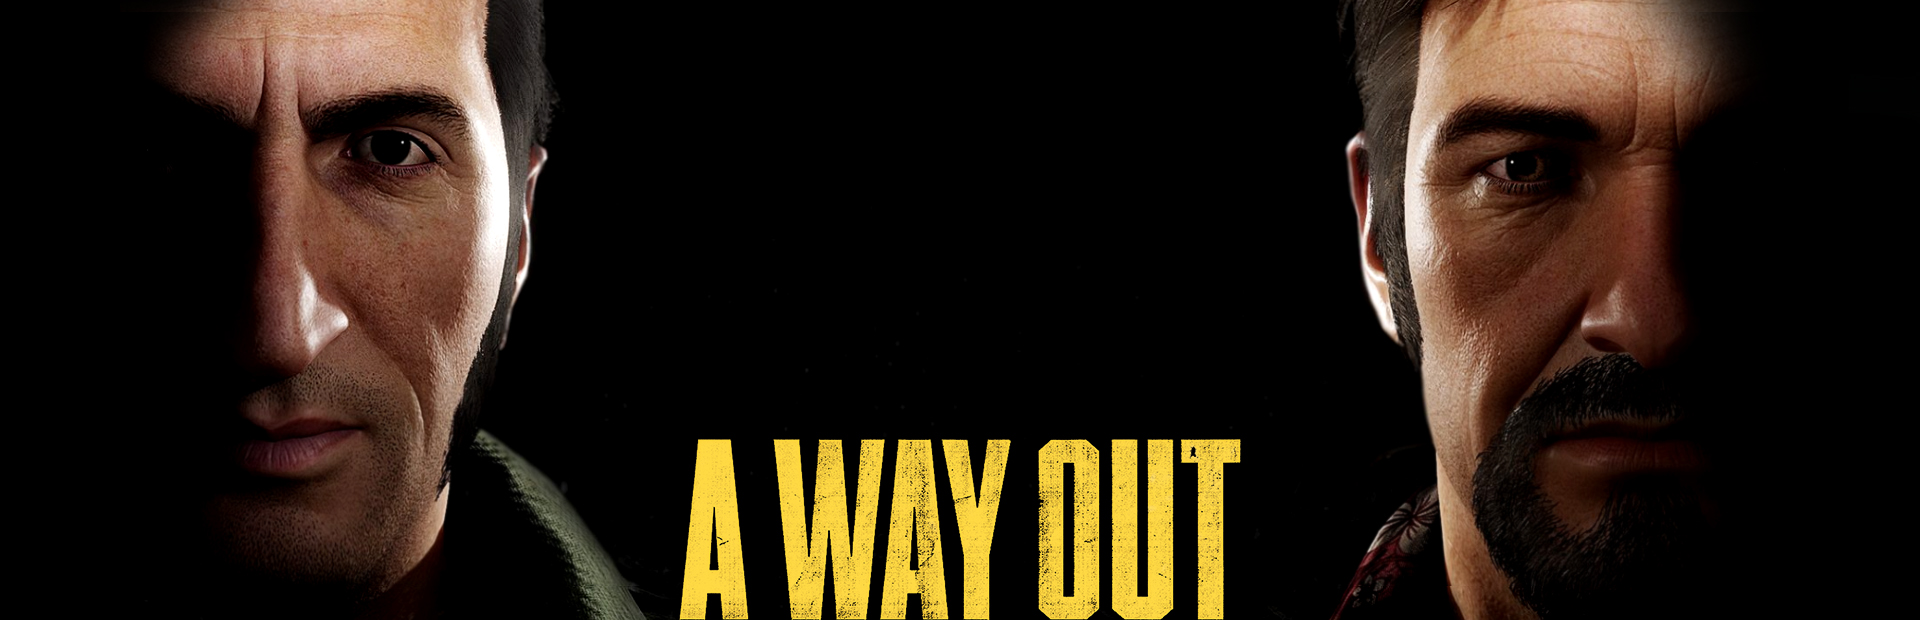 دانلود بازی A Way Out برای کامپیوتر | گیمباتو